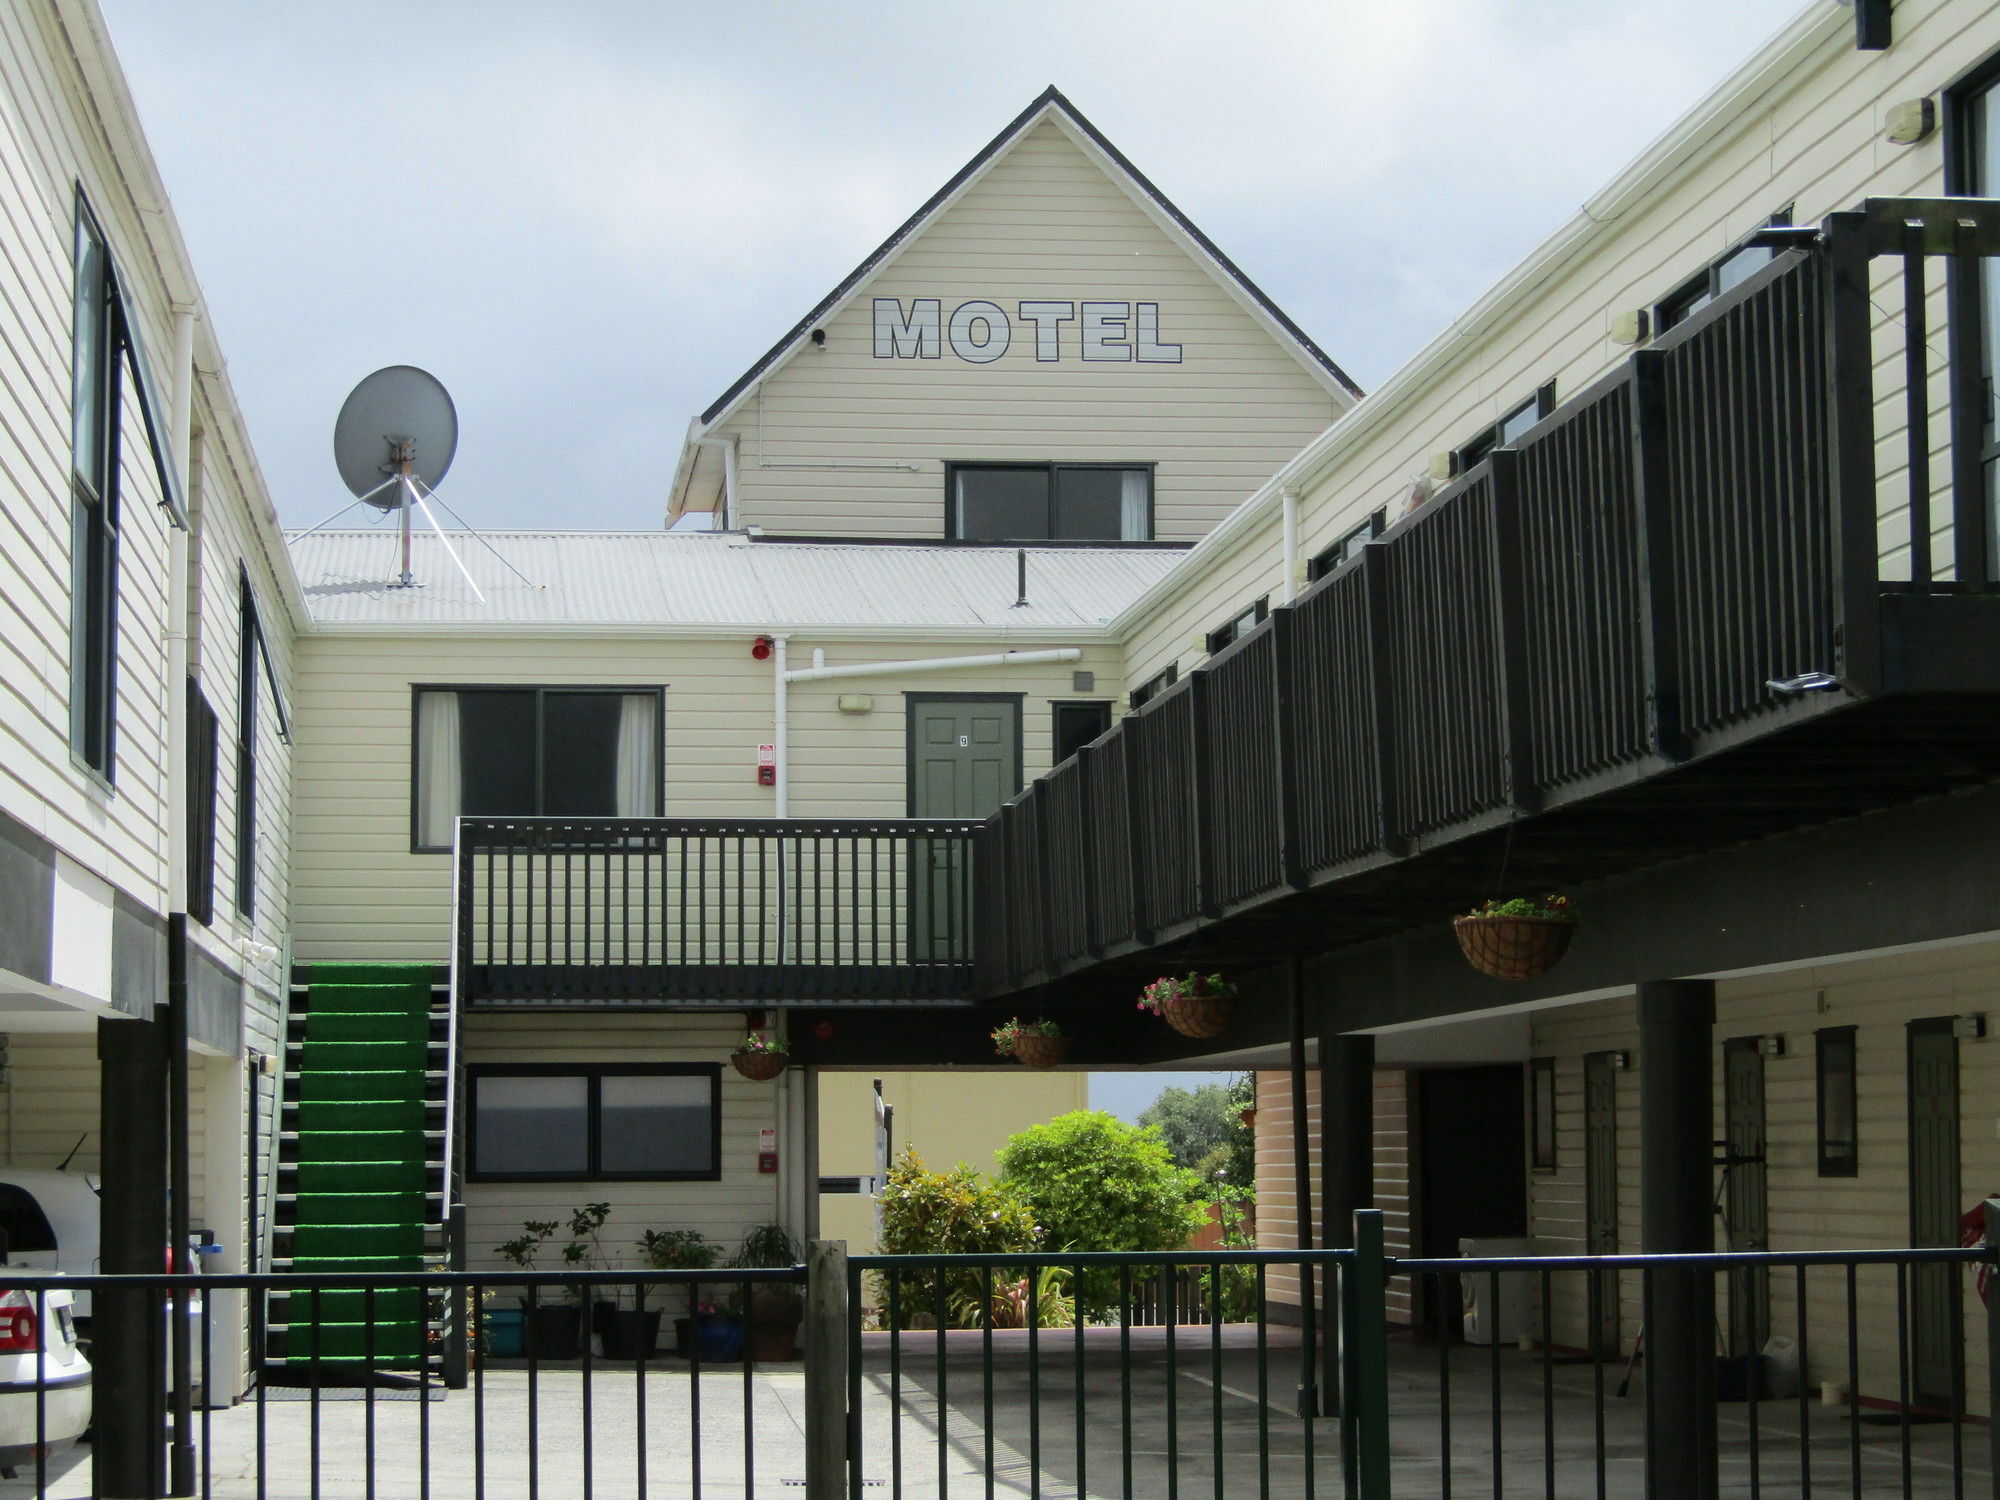 Pohutu Lodge Motel Rotorua Ngoại thất bức ảnh